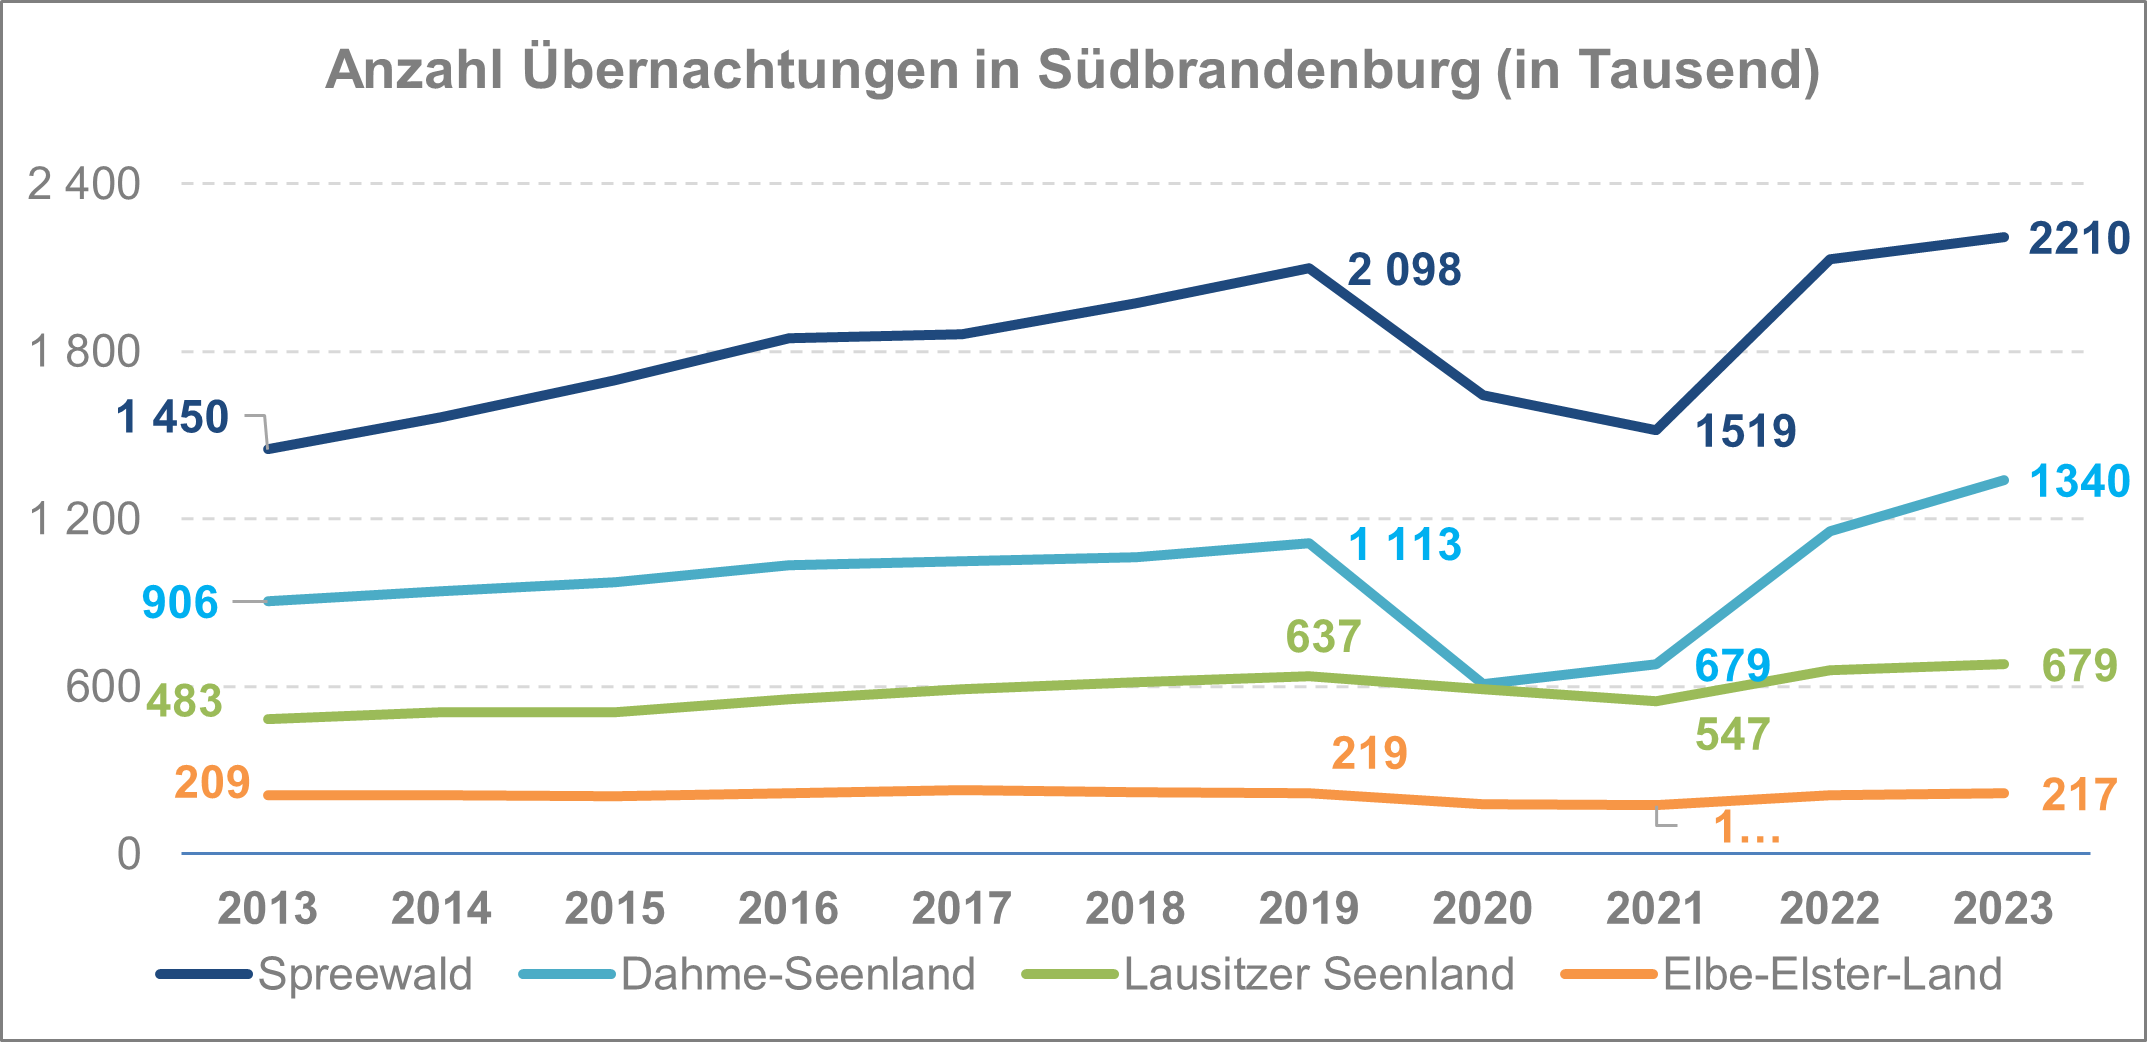 Uebeernachtungen Tourismus Suedbrandenburg 2023